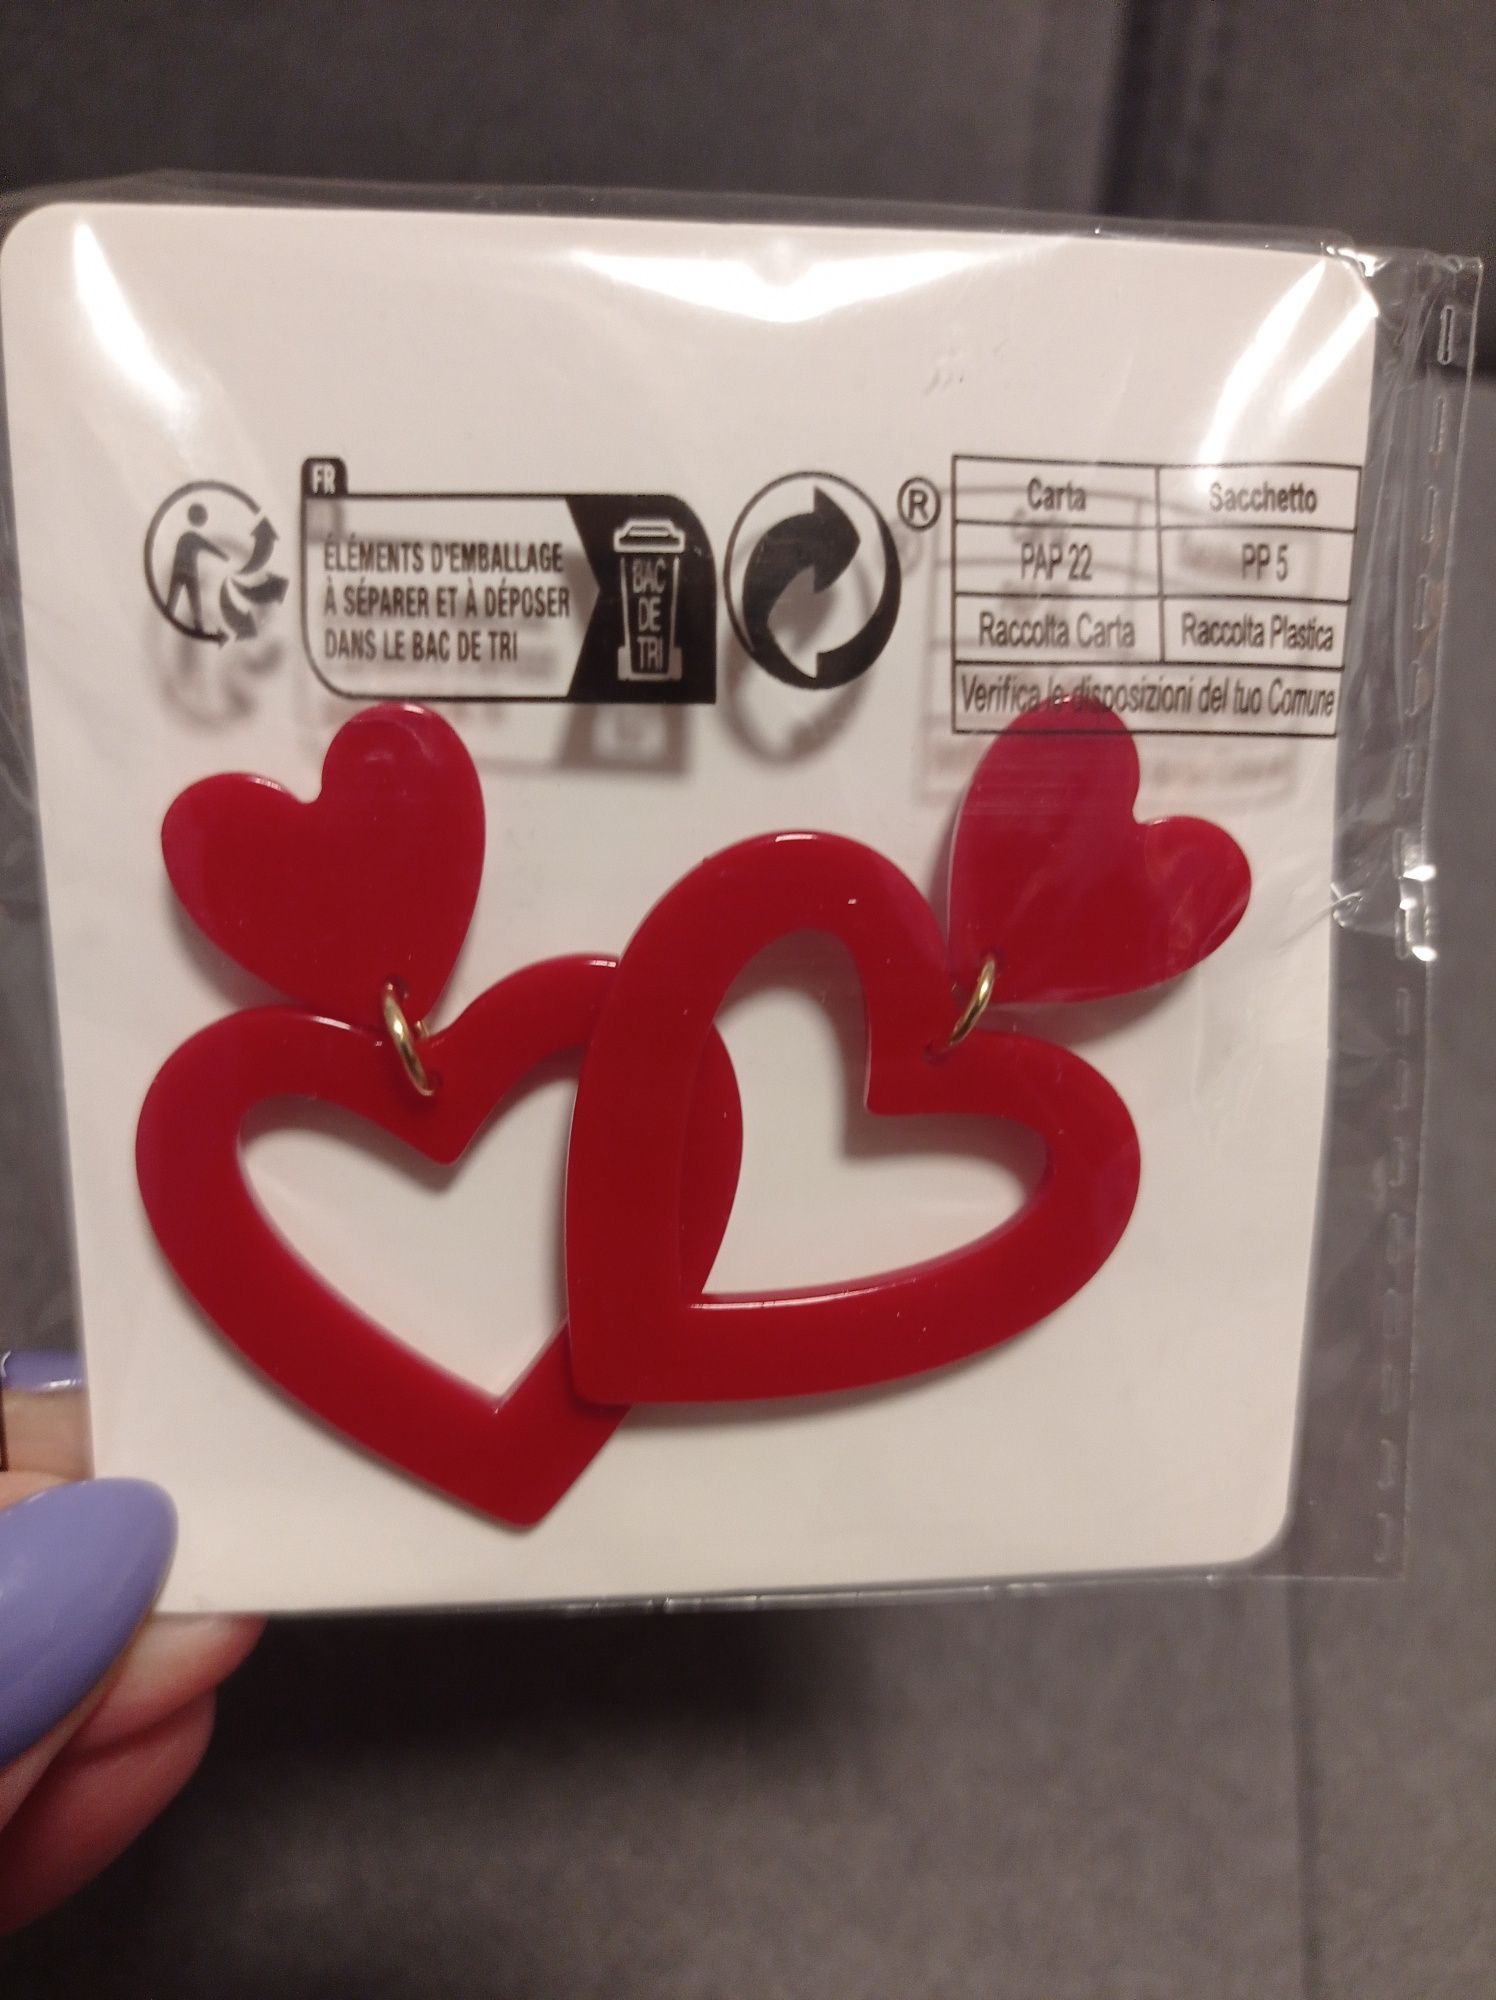 Kolczyki w kształcie serc